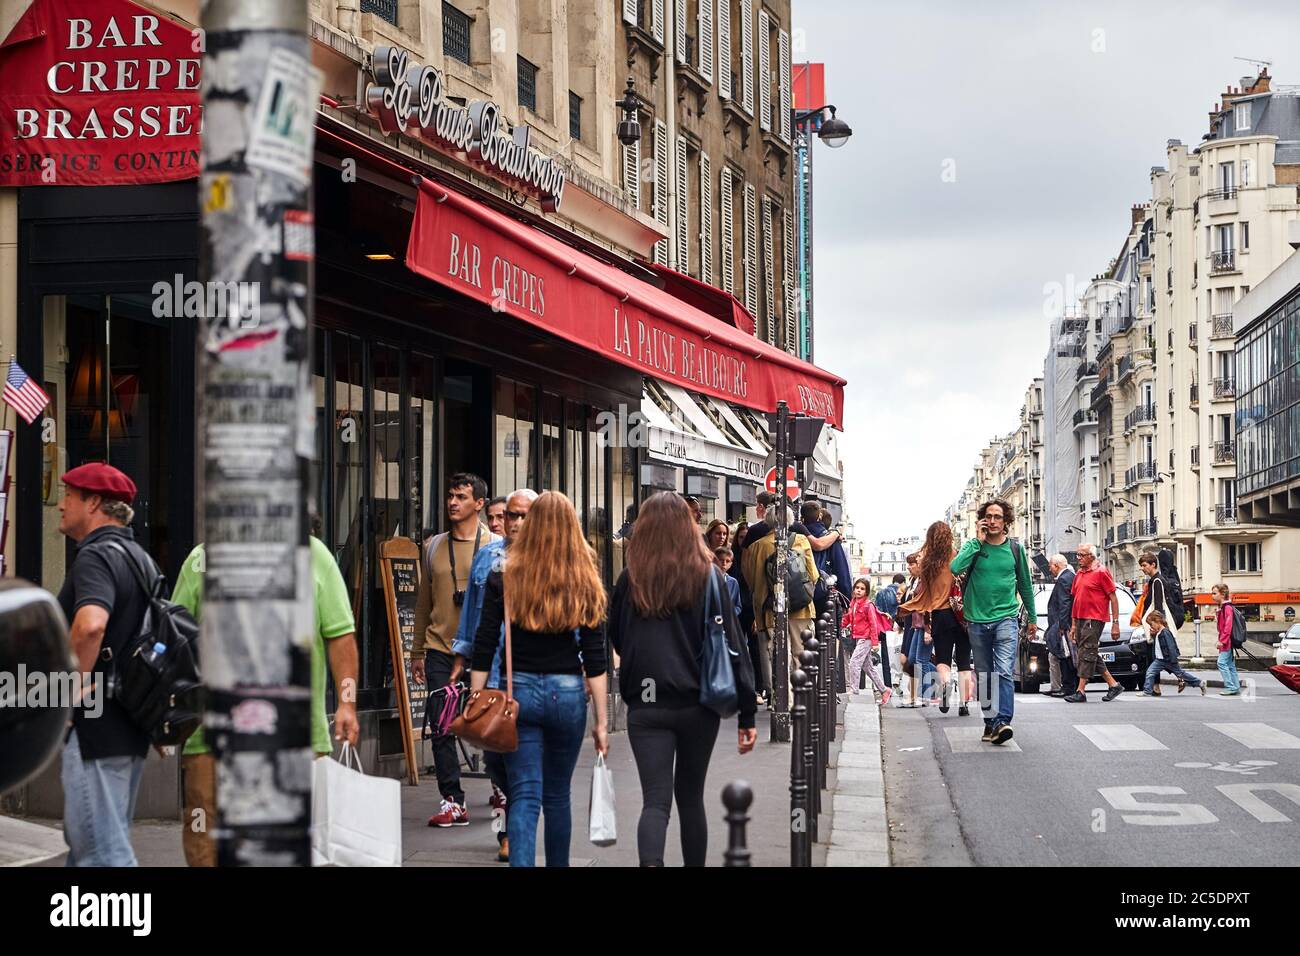 Parigi, Francia - 18 giugno 2015: Un uomo dai capelli ricci in un pullover verde cammina per la strada parlando al telefono. Persone che camminano lungo il marciapiede Foto Stock